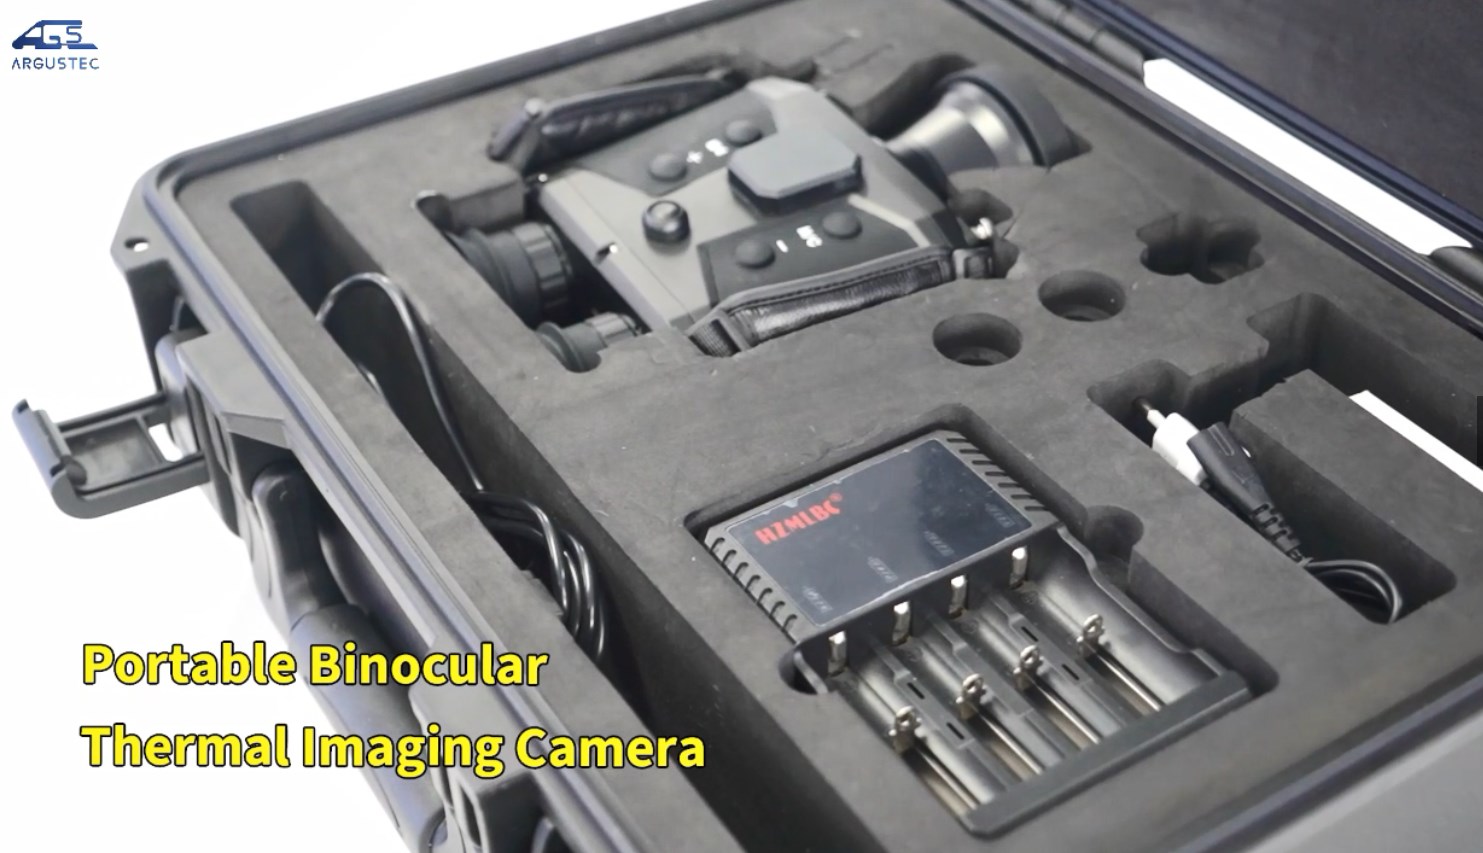 Portable Binocular Thermal Imaging Camera